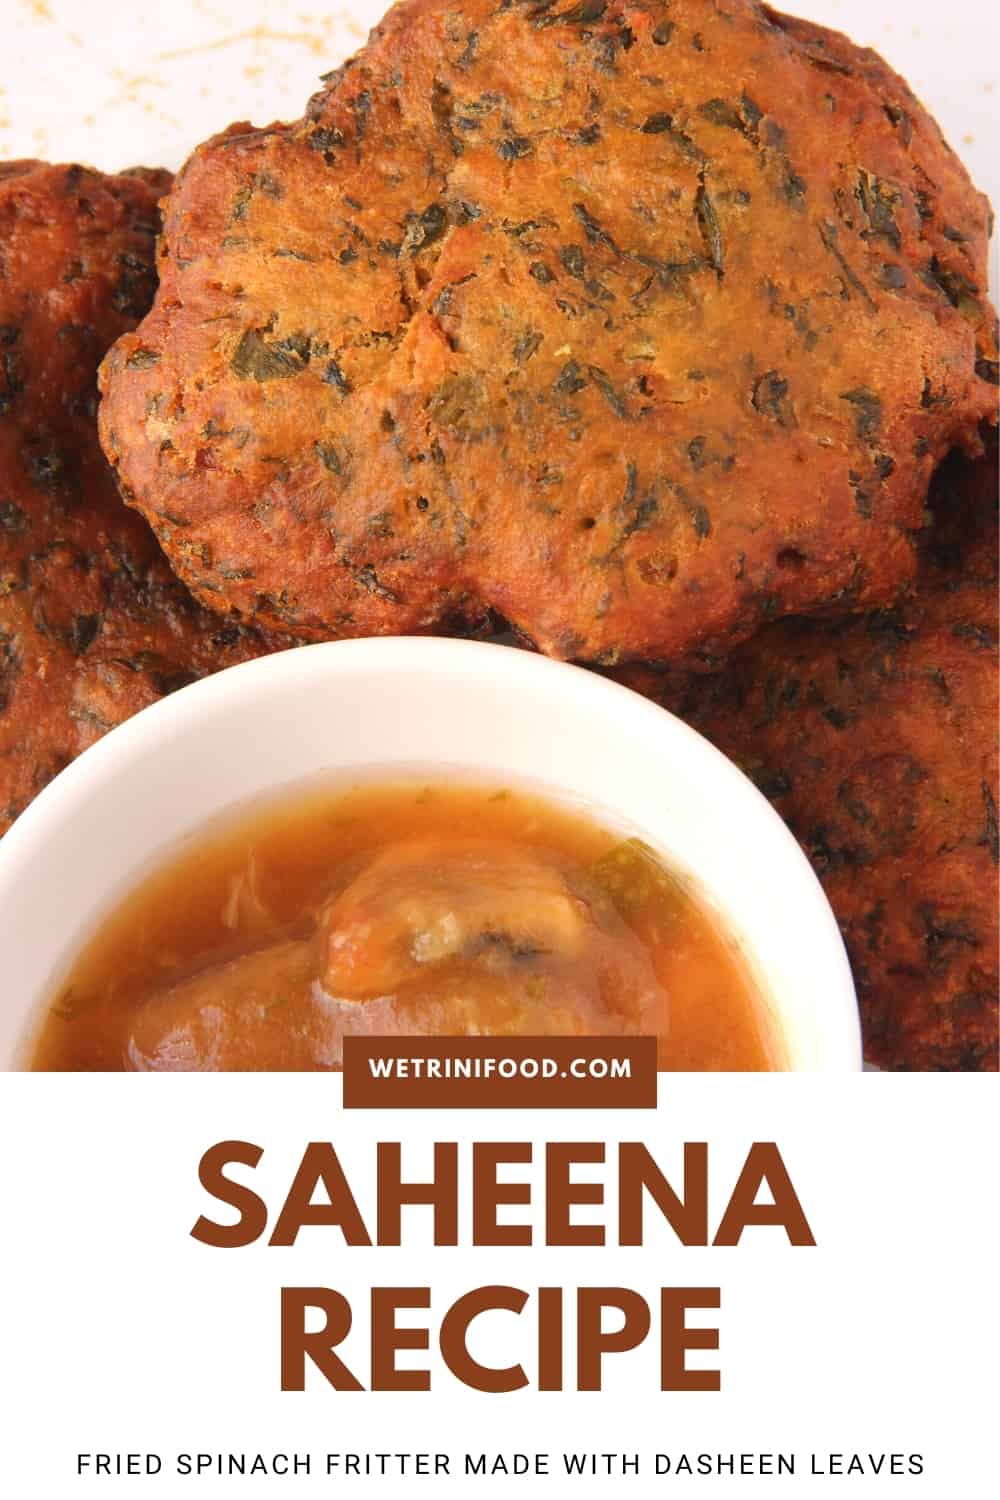 saheena with tamarind sauce pinterest image